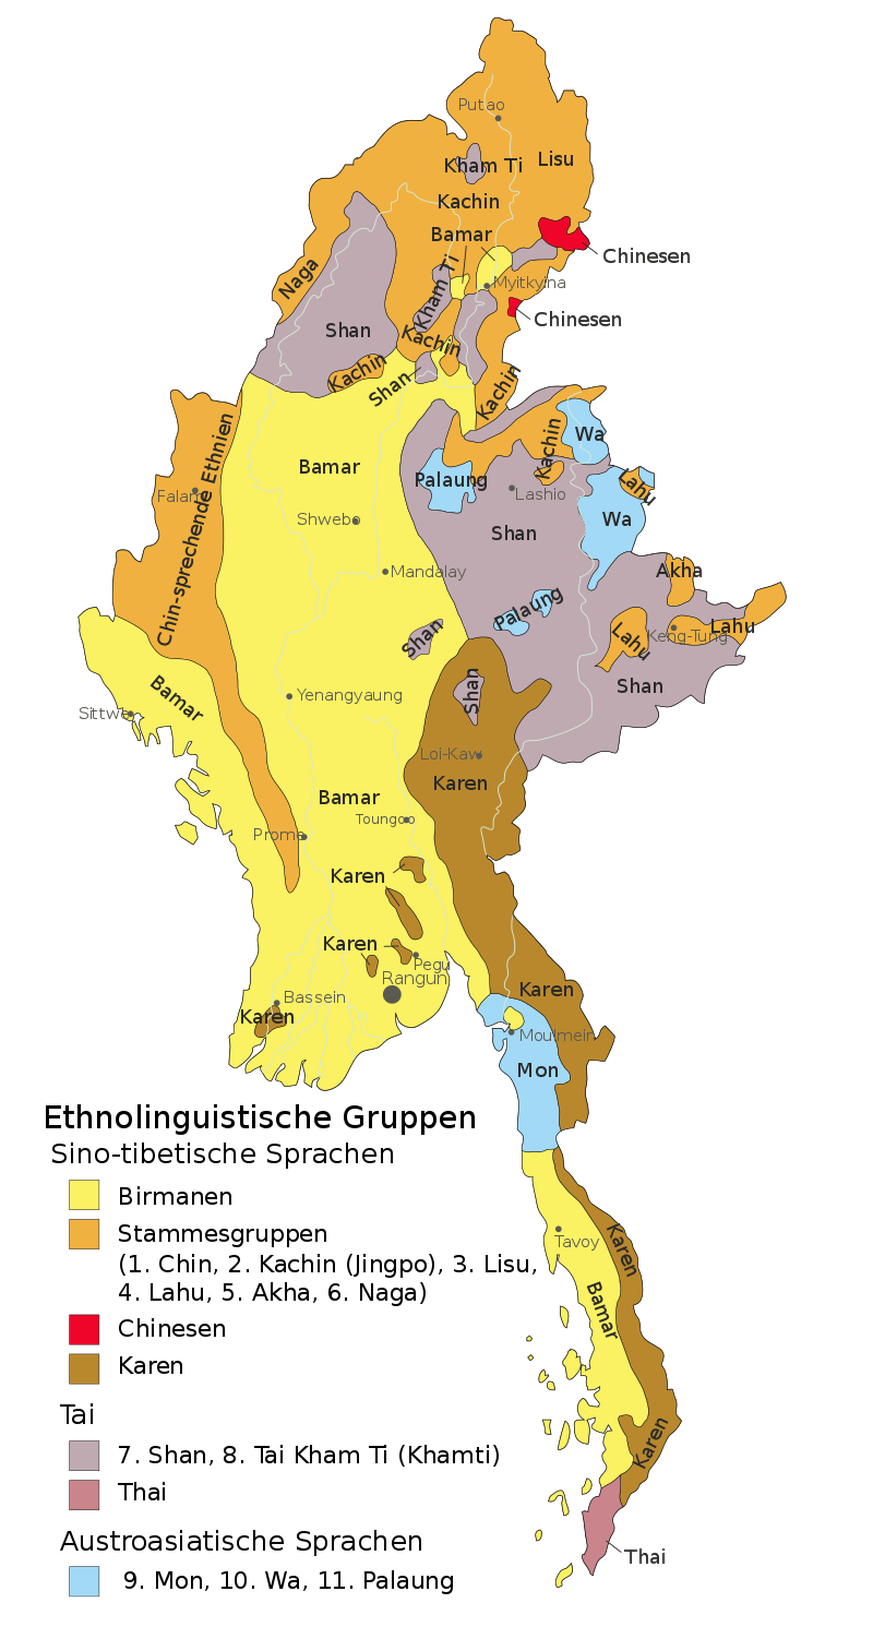 Burma, Myanmar: Ethnolinguistische Karte nach Informationen der CIA (1972)
Furfur - Diese Datei wurde von diesem Werk abgeleitet: Ethnolinguistic map of Burma 1972 en.svg, CC BY-SA 4.0, https://common ...